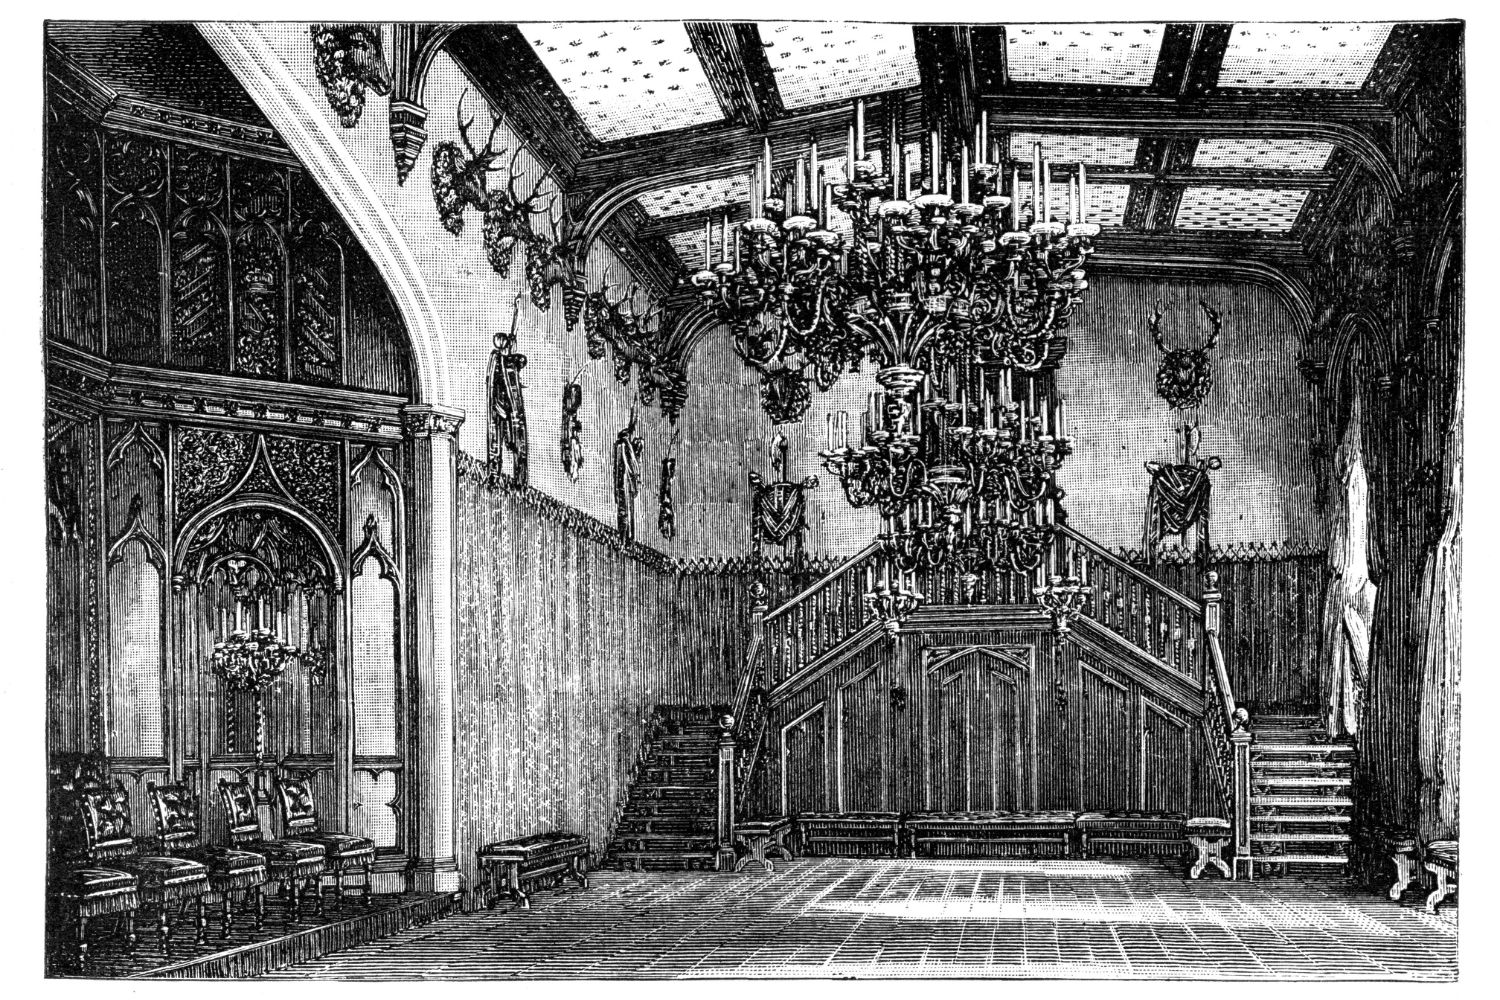 balmoral-castle-ballroom